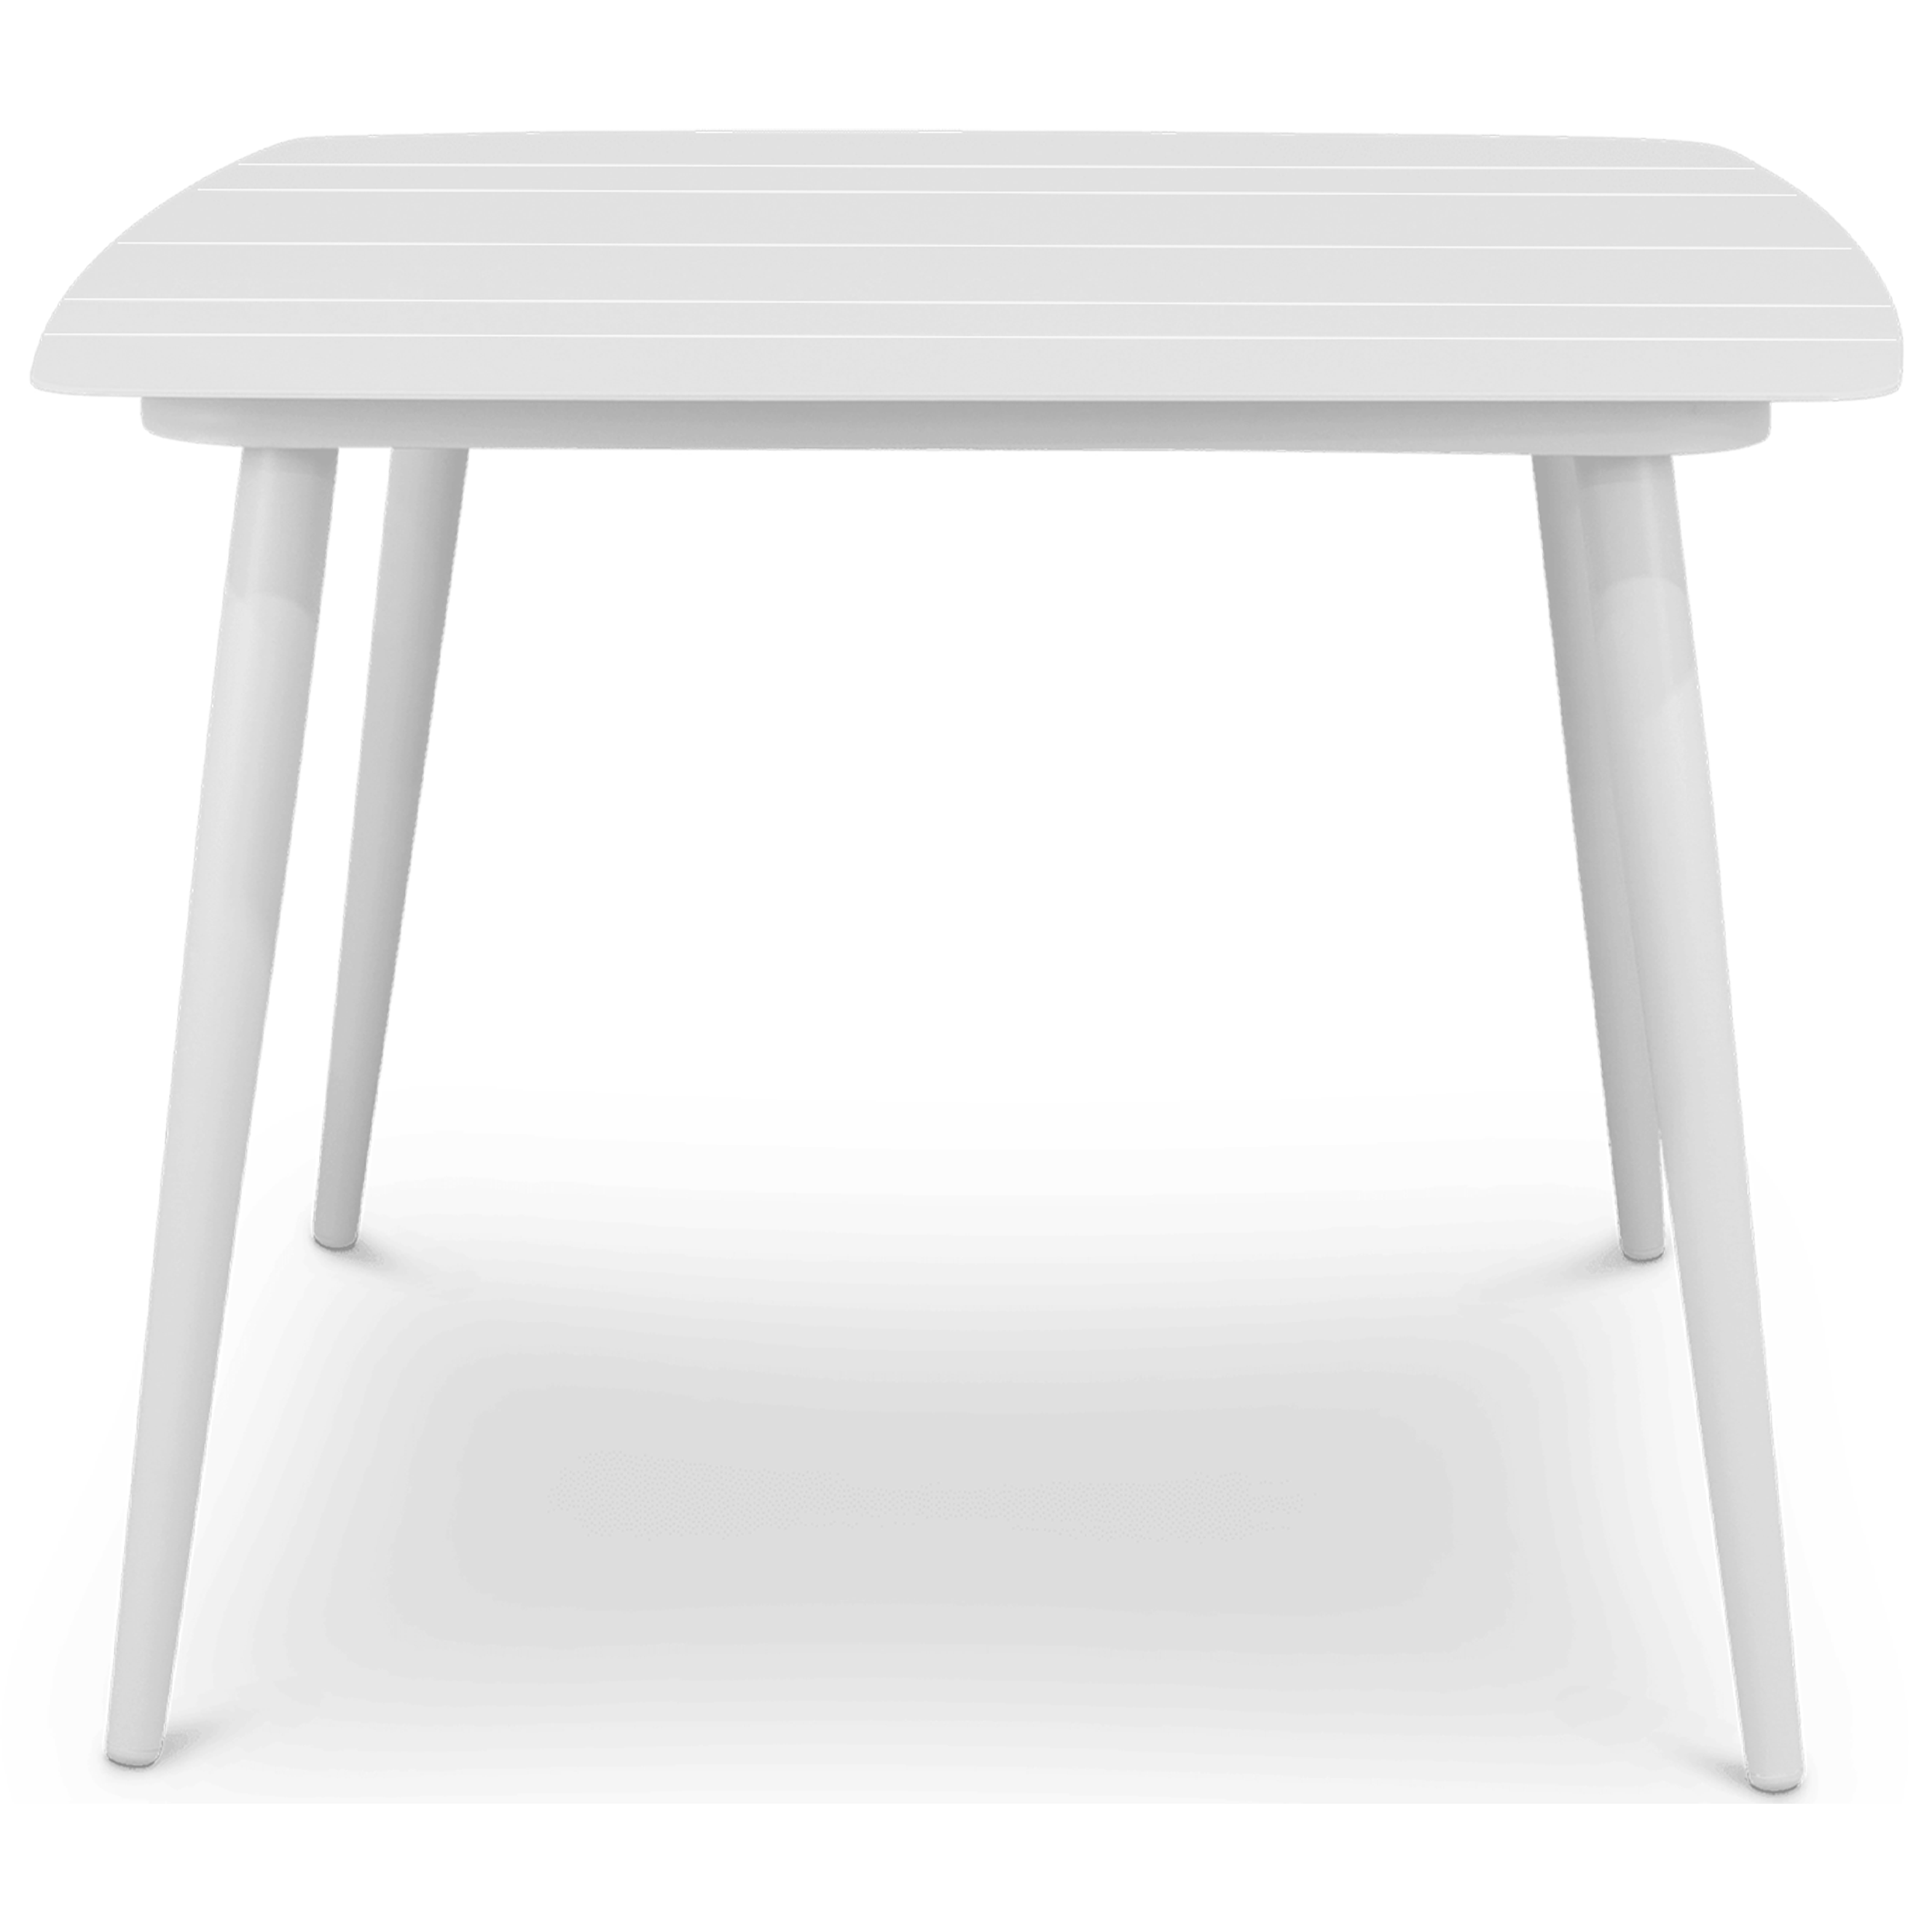 Amalfi Square Dining Table (100x100cm) in Arctic White Aluminium